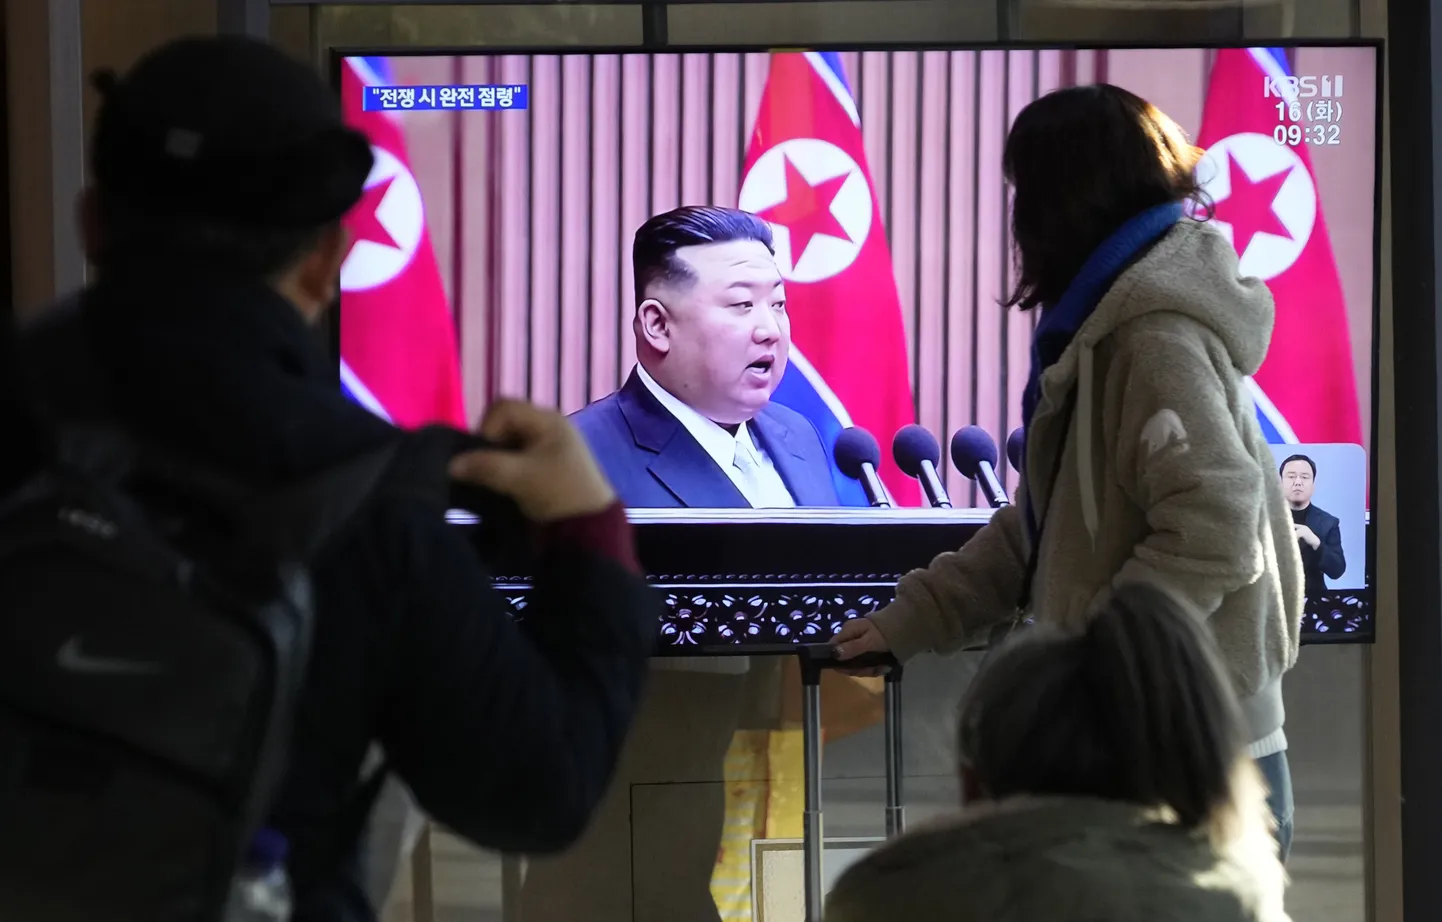 Lõuna-Korea pealinna Souli ühes raudteejaamas olevalt teleekraanilt paistab uudistesaates Põhja-Korea liider Kim Jong-un.